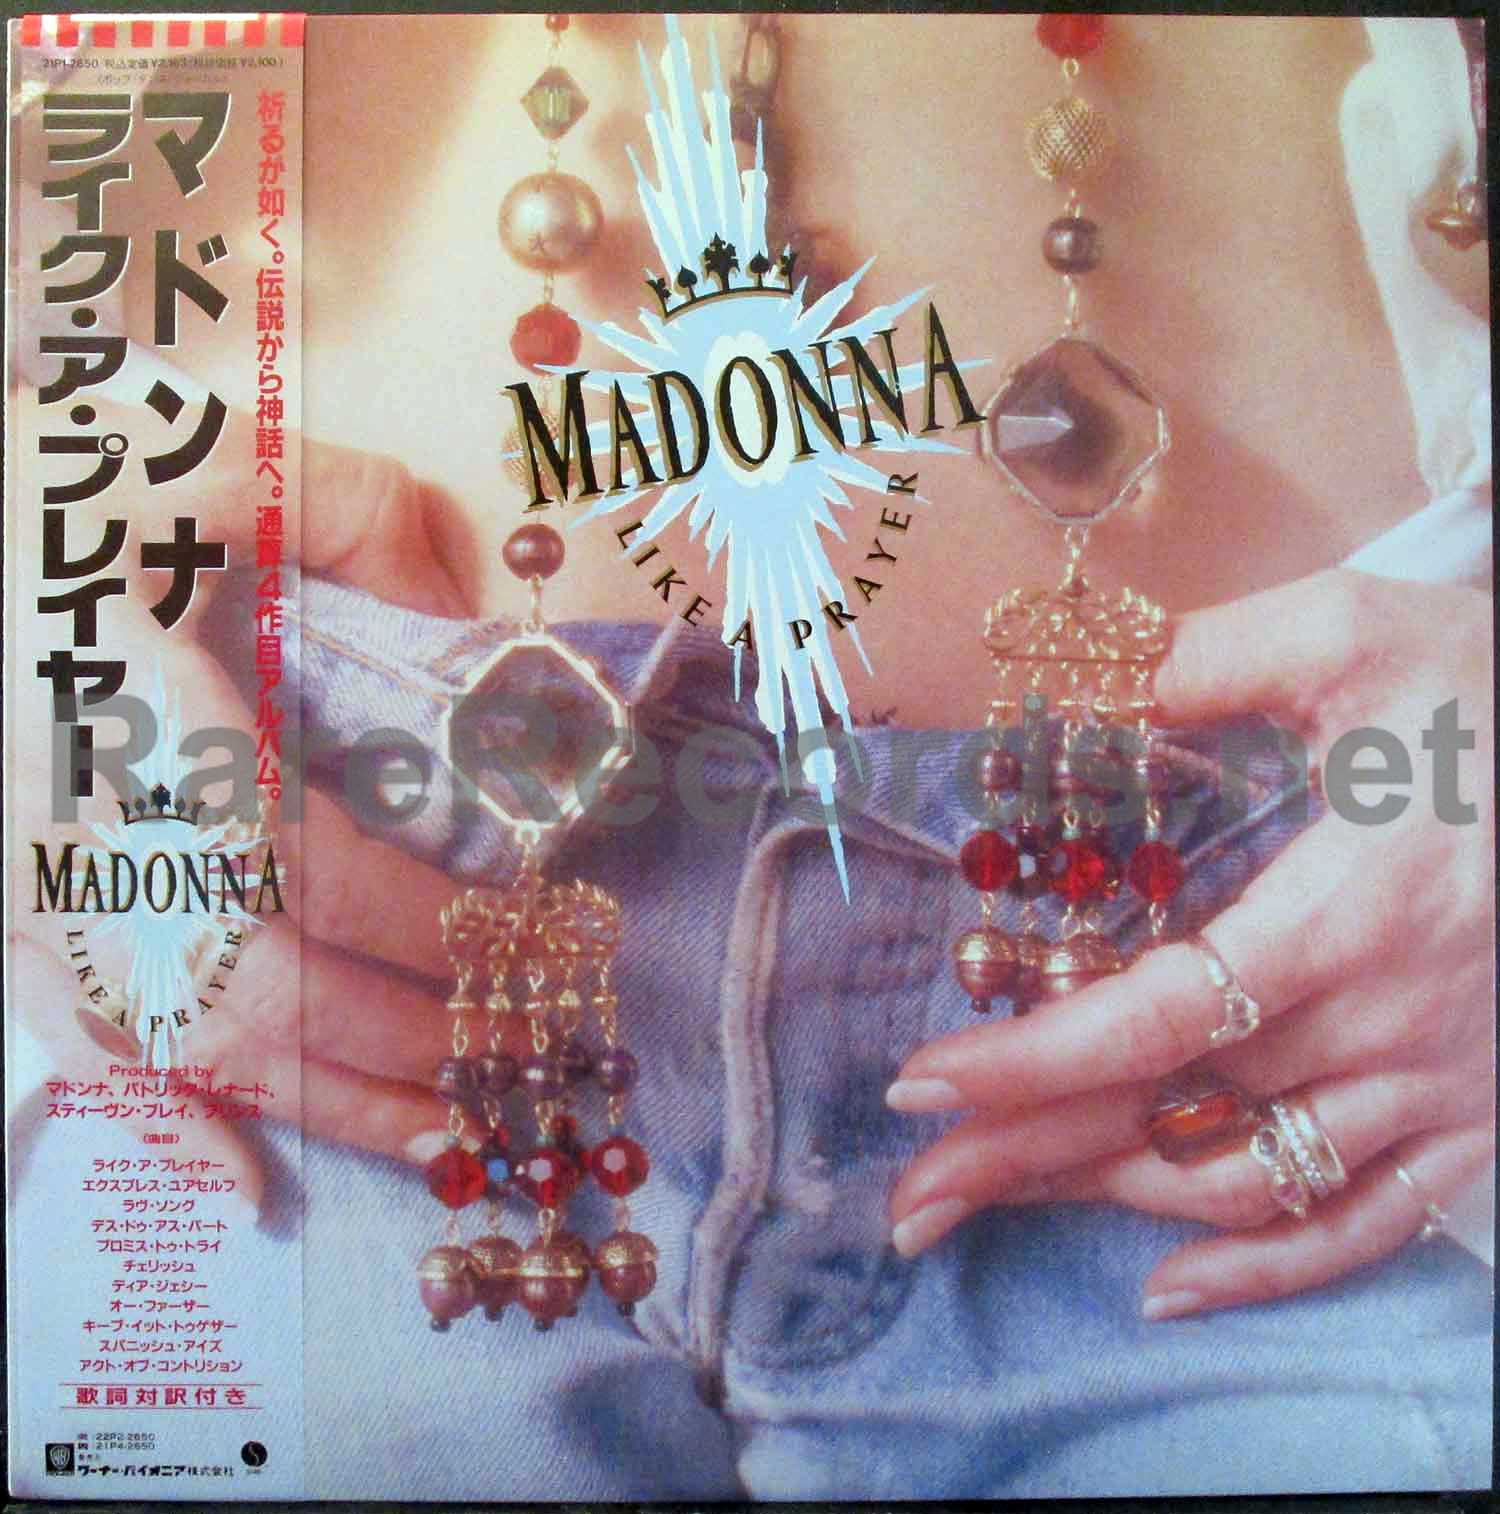 – Like a 1989 Japan LP with obi